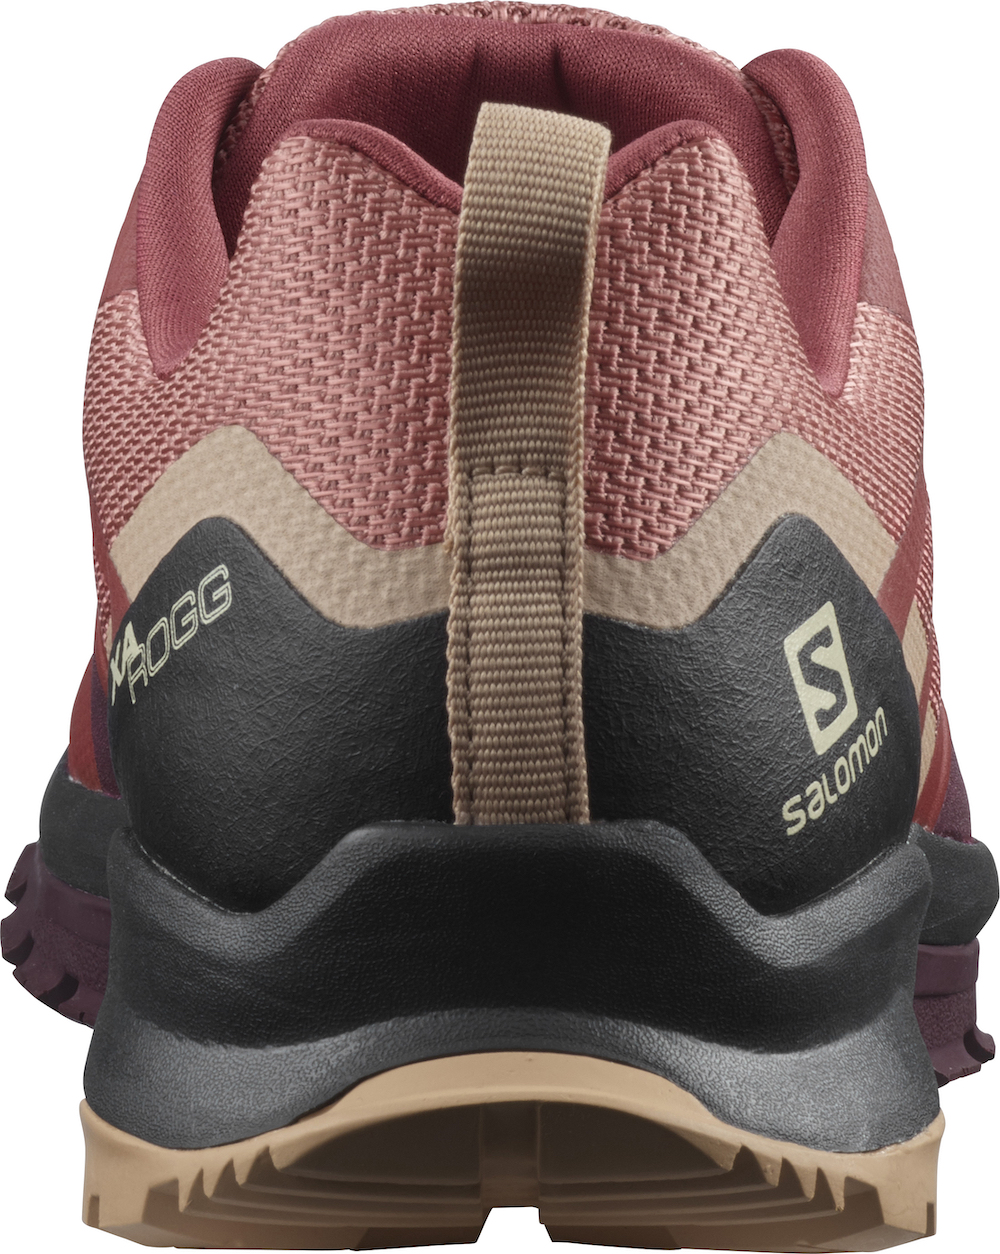 Salomon - XA ROGG W, Trailrunning-Schuhe für Frauen